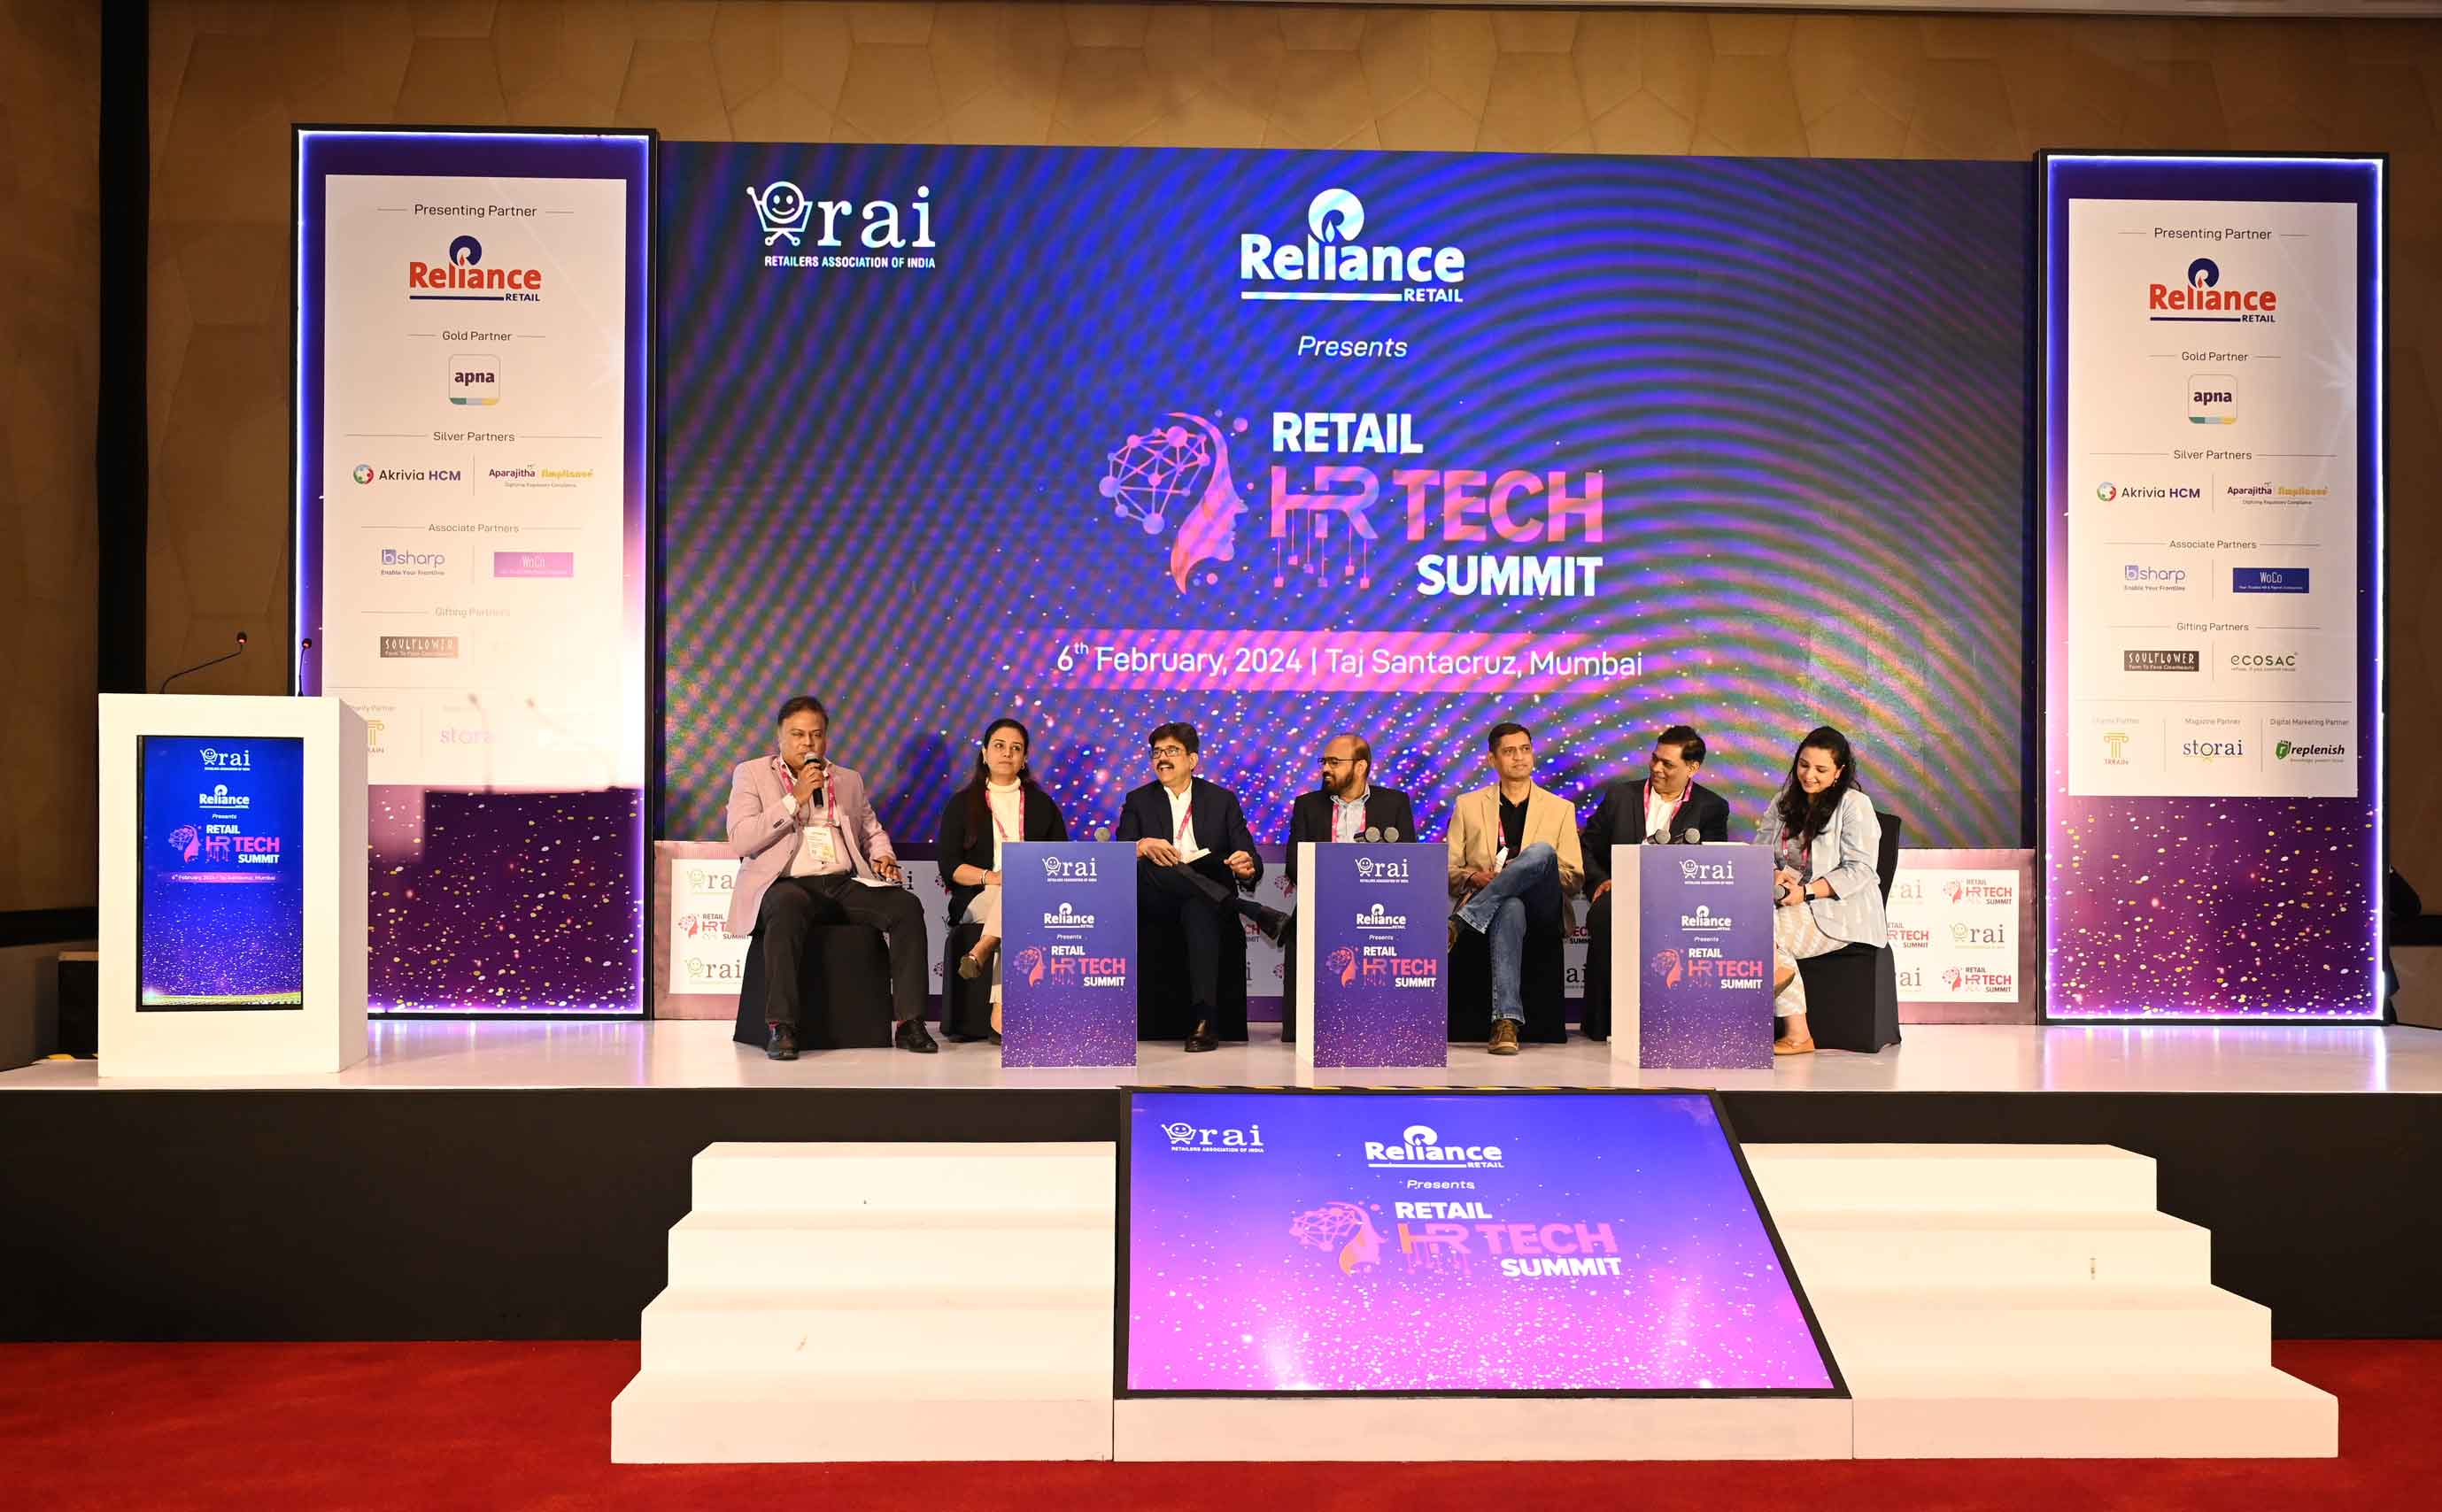 Retail HR Tech Summit held in Mumbai